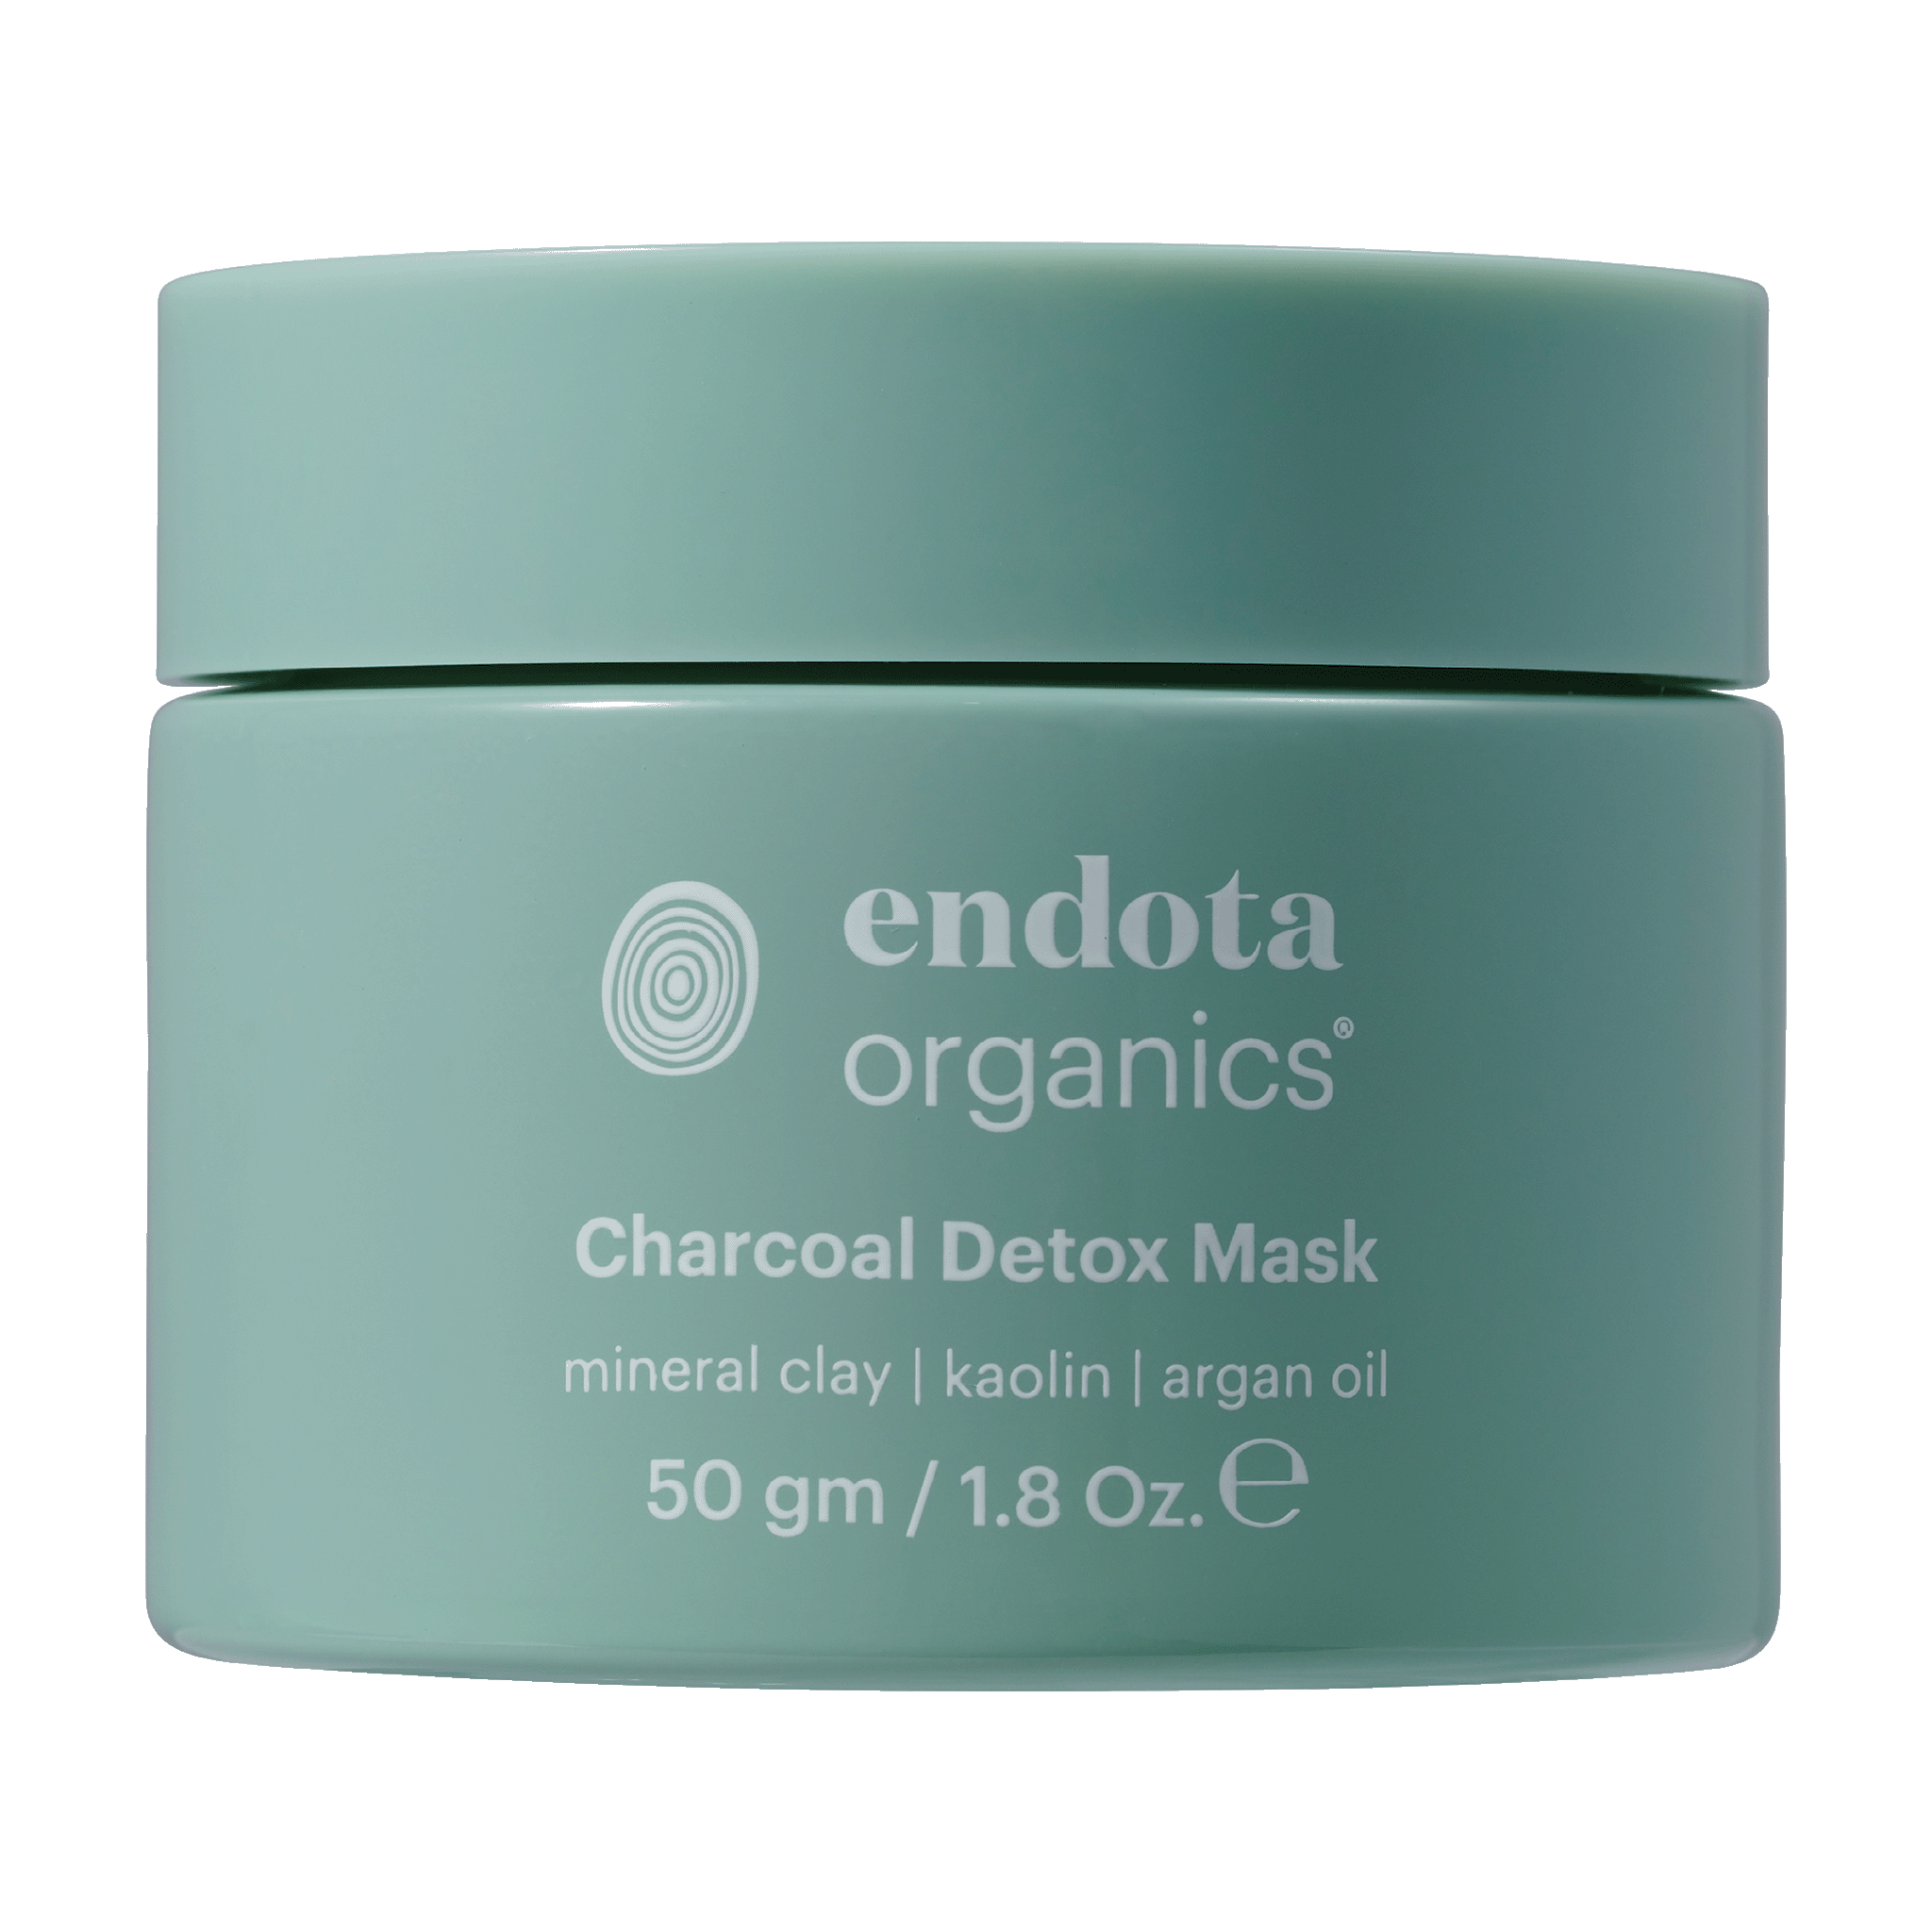 Endota Organics Charcoal Detox Mask 50g